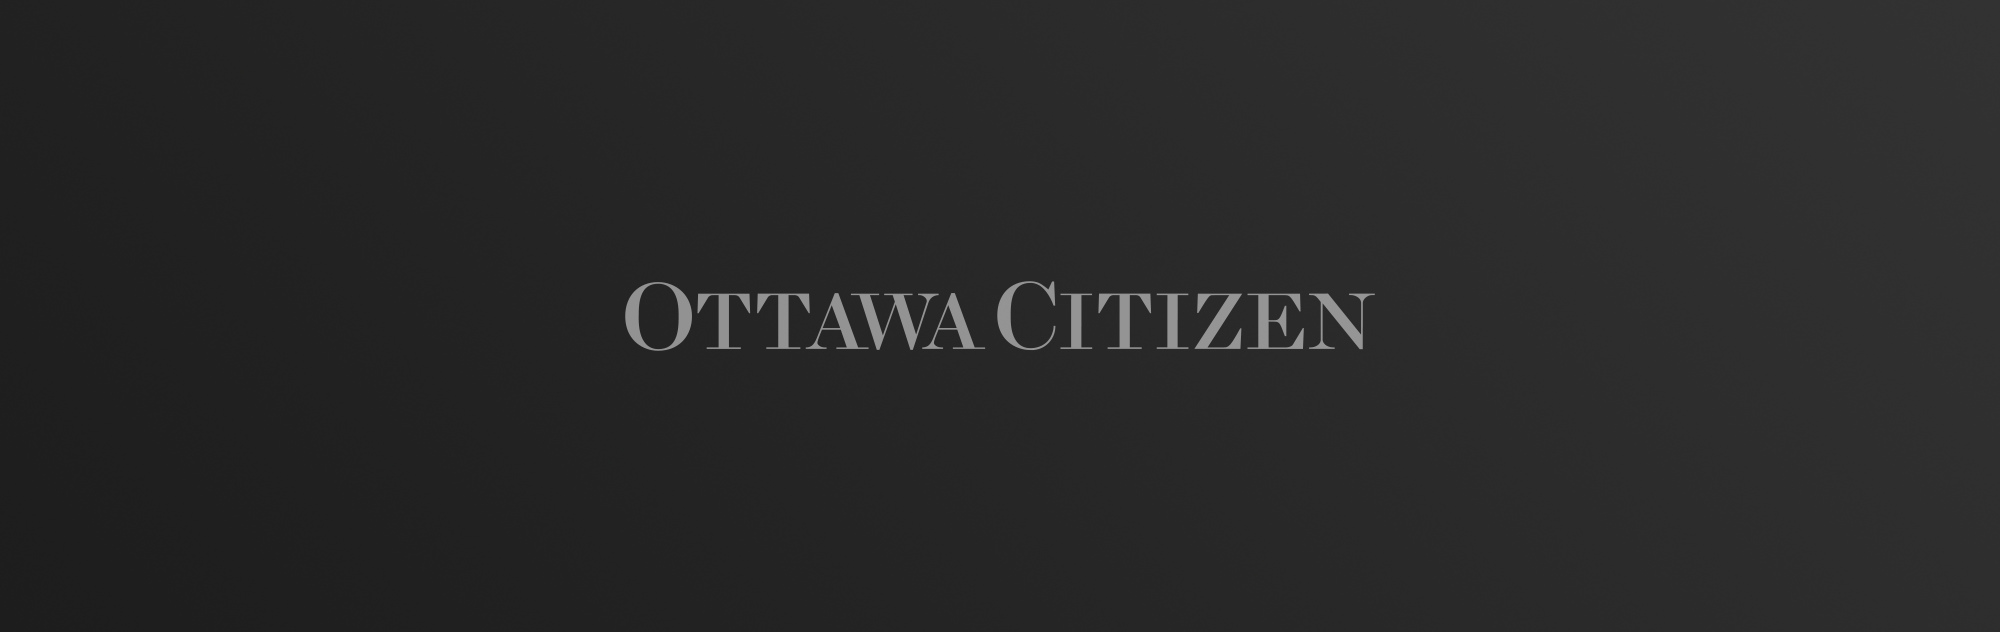 Ottawa Citizen logo on dark gradient background